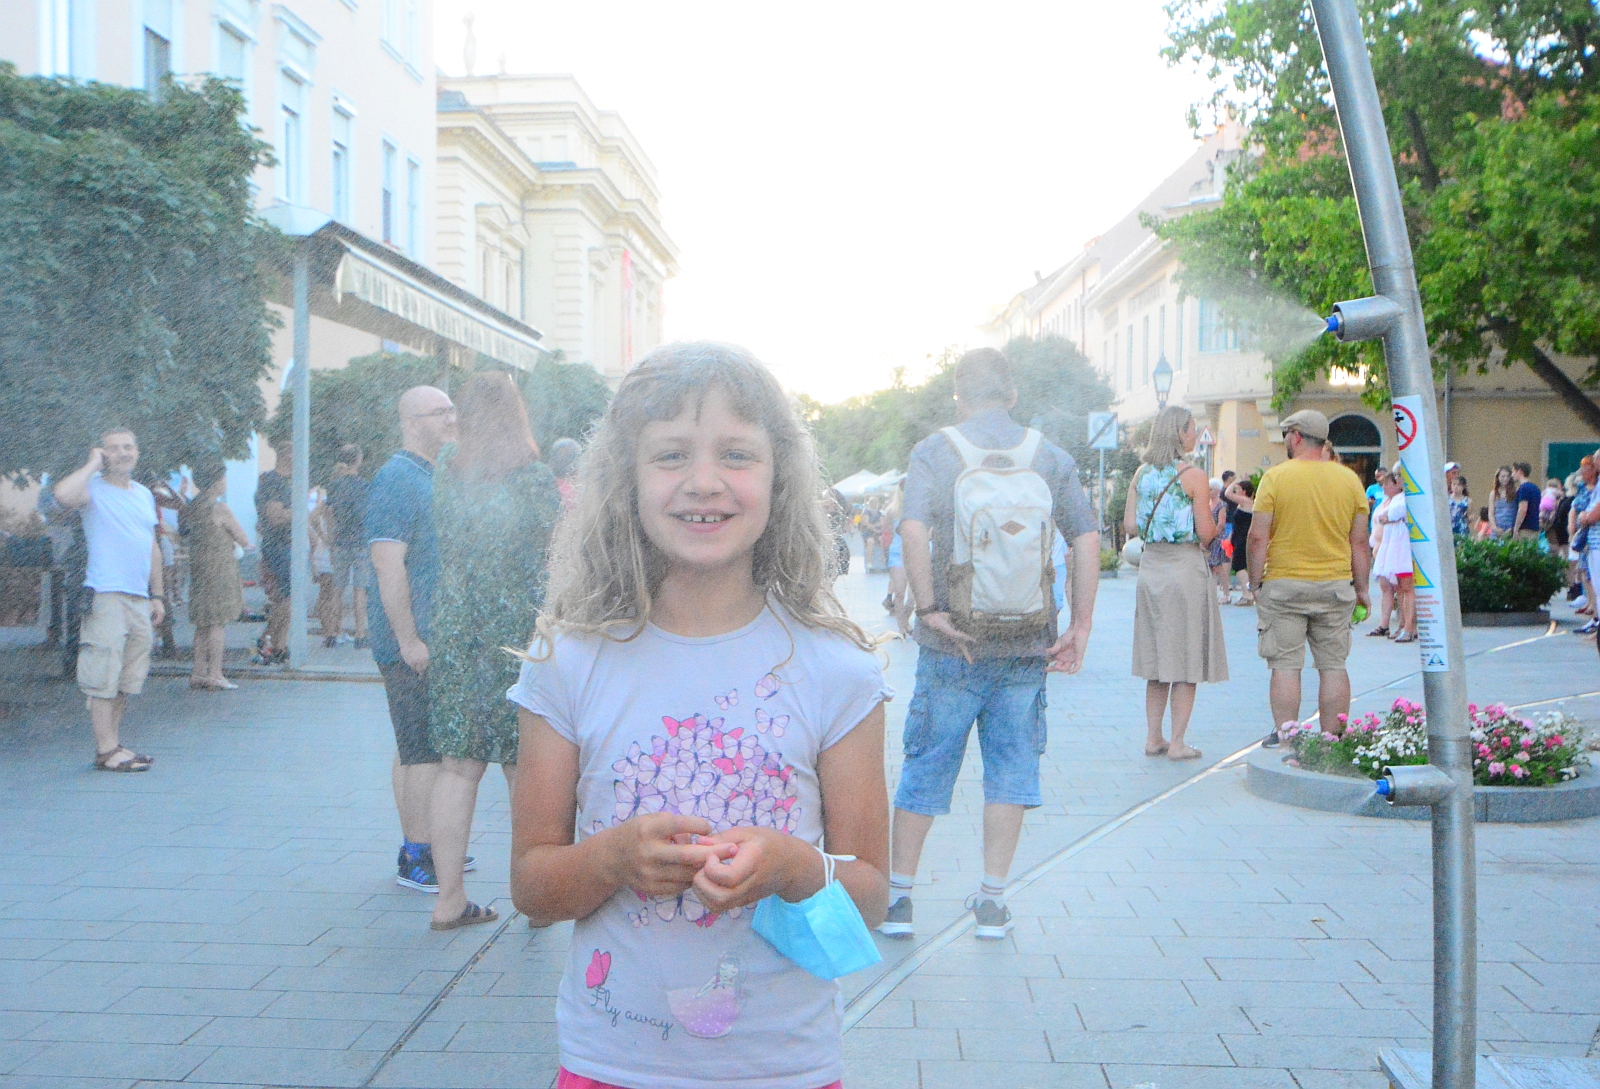 Másodfokú hőségriasztás csütörtök éjfélig - Székesfehérvár polgármesterének tájékoztatója